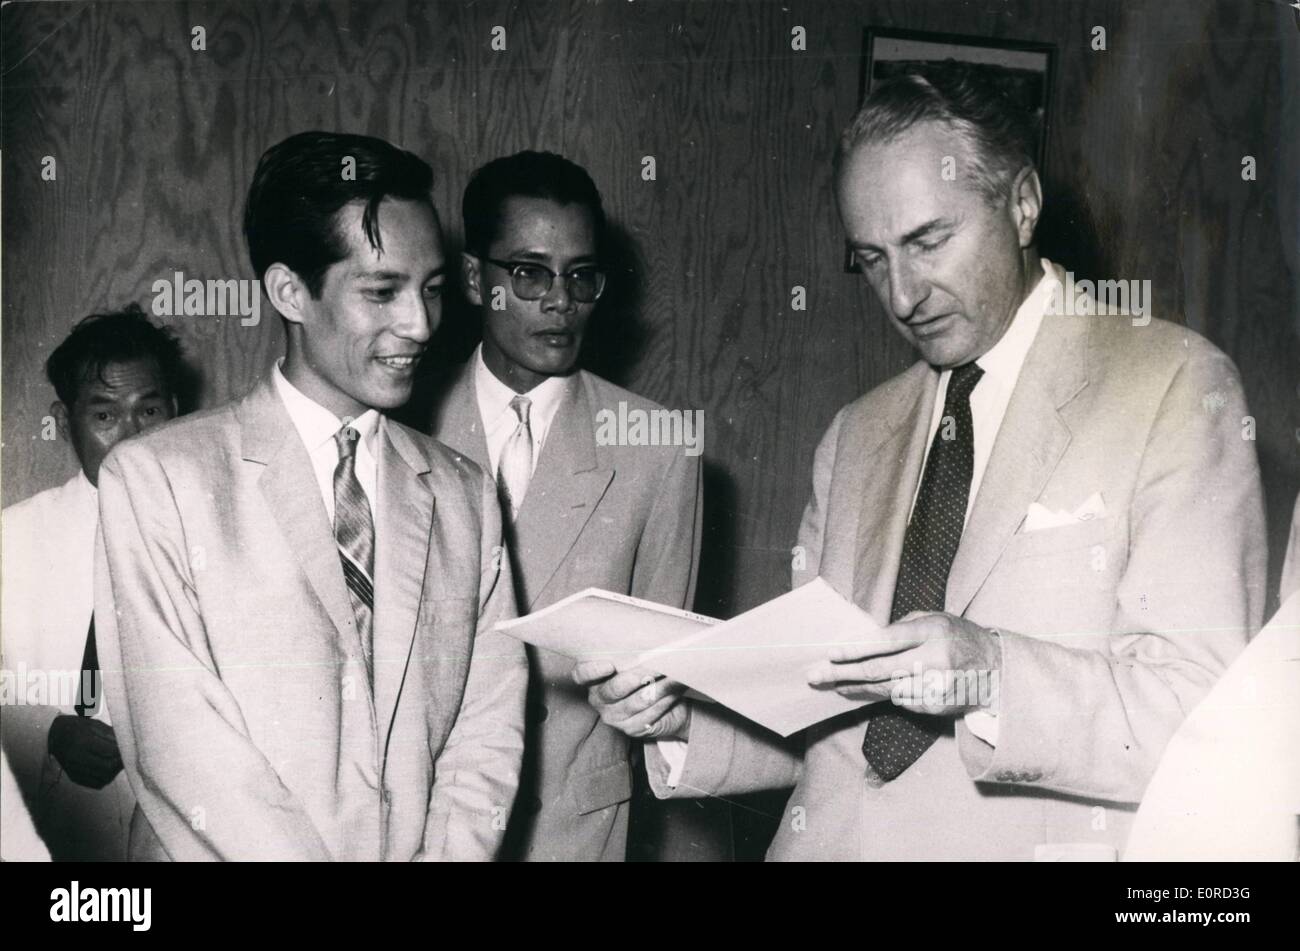 3. März 1959 - britische parlamentarische Delegation auf Besuch in Saigon... Saigon - vor kurzem von Manila an fünf Tagen unter der Leitung von Lord Moyne Tan Son Nhut eine Delegation des britischen Parlaments angekommen, besuchen Sie... Während des Besuchs der Delegation von sechs - erhalten von Präsident Ngo Dinh Diem Stockfoto